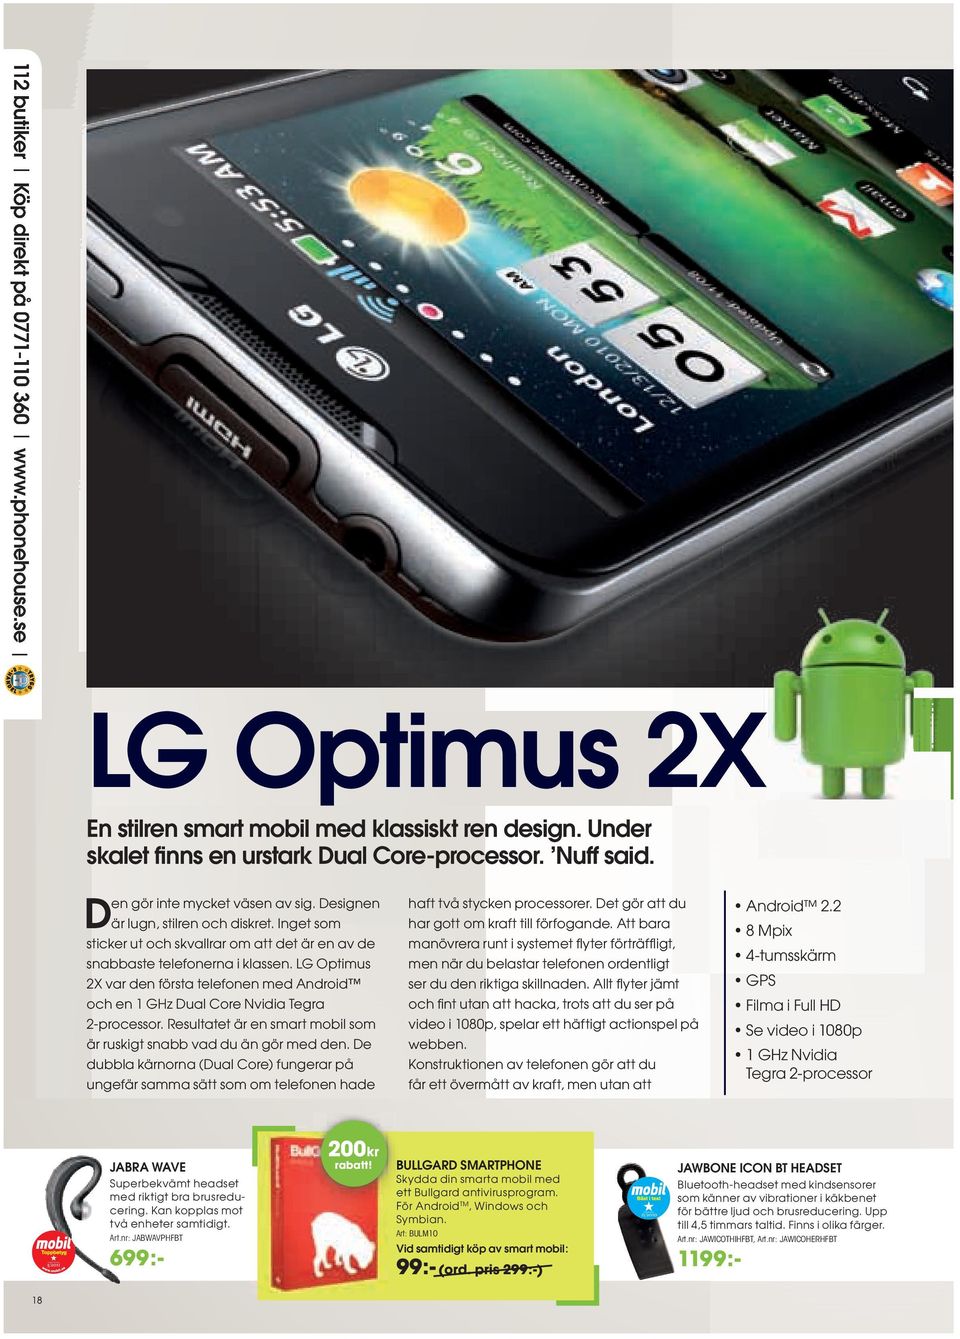 LG Optimus 2X var den första telefonen med Android och en 1 GHz Dual Core Nvidia Tegra 2-processor. Resultatet är en smart mobil som är ruskigt snabb vad du än gör med den.